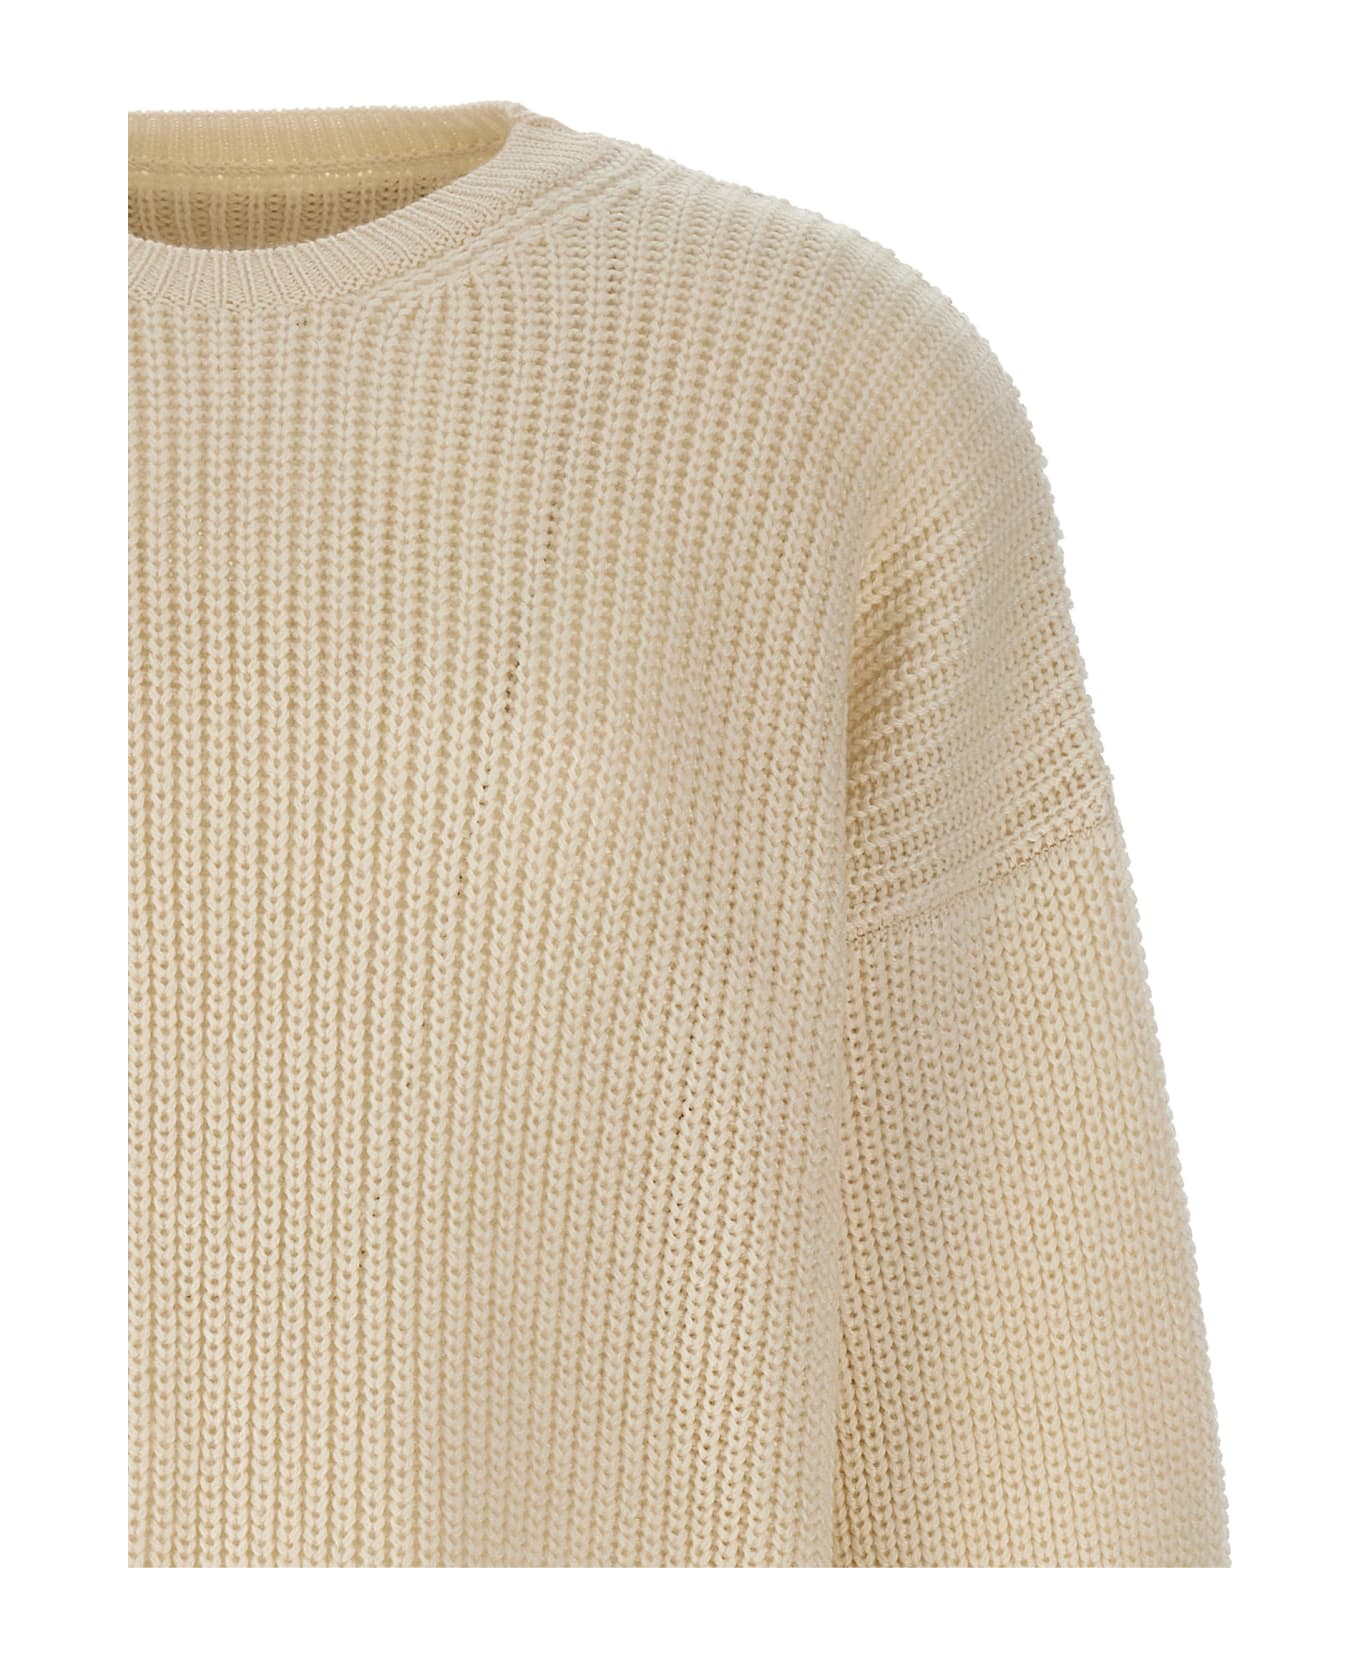 MM6 Maison Margiela Shirt Insert Sweater - 101 ニットウェア